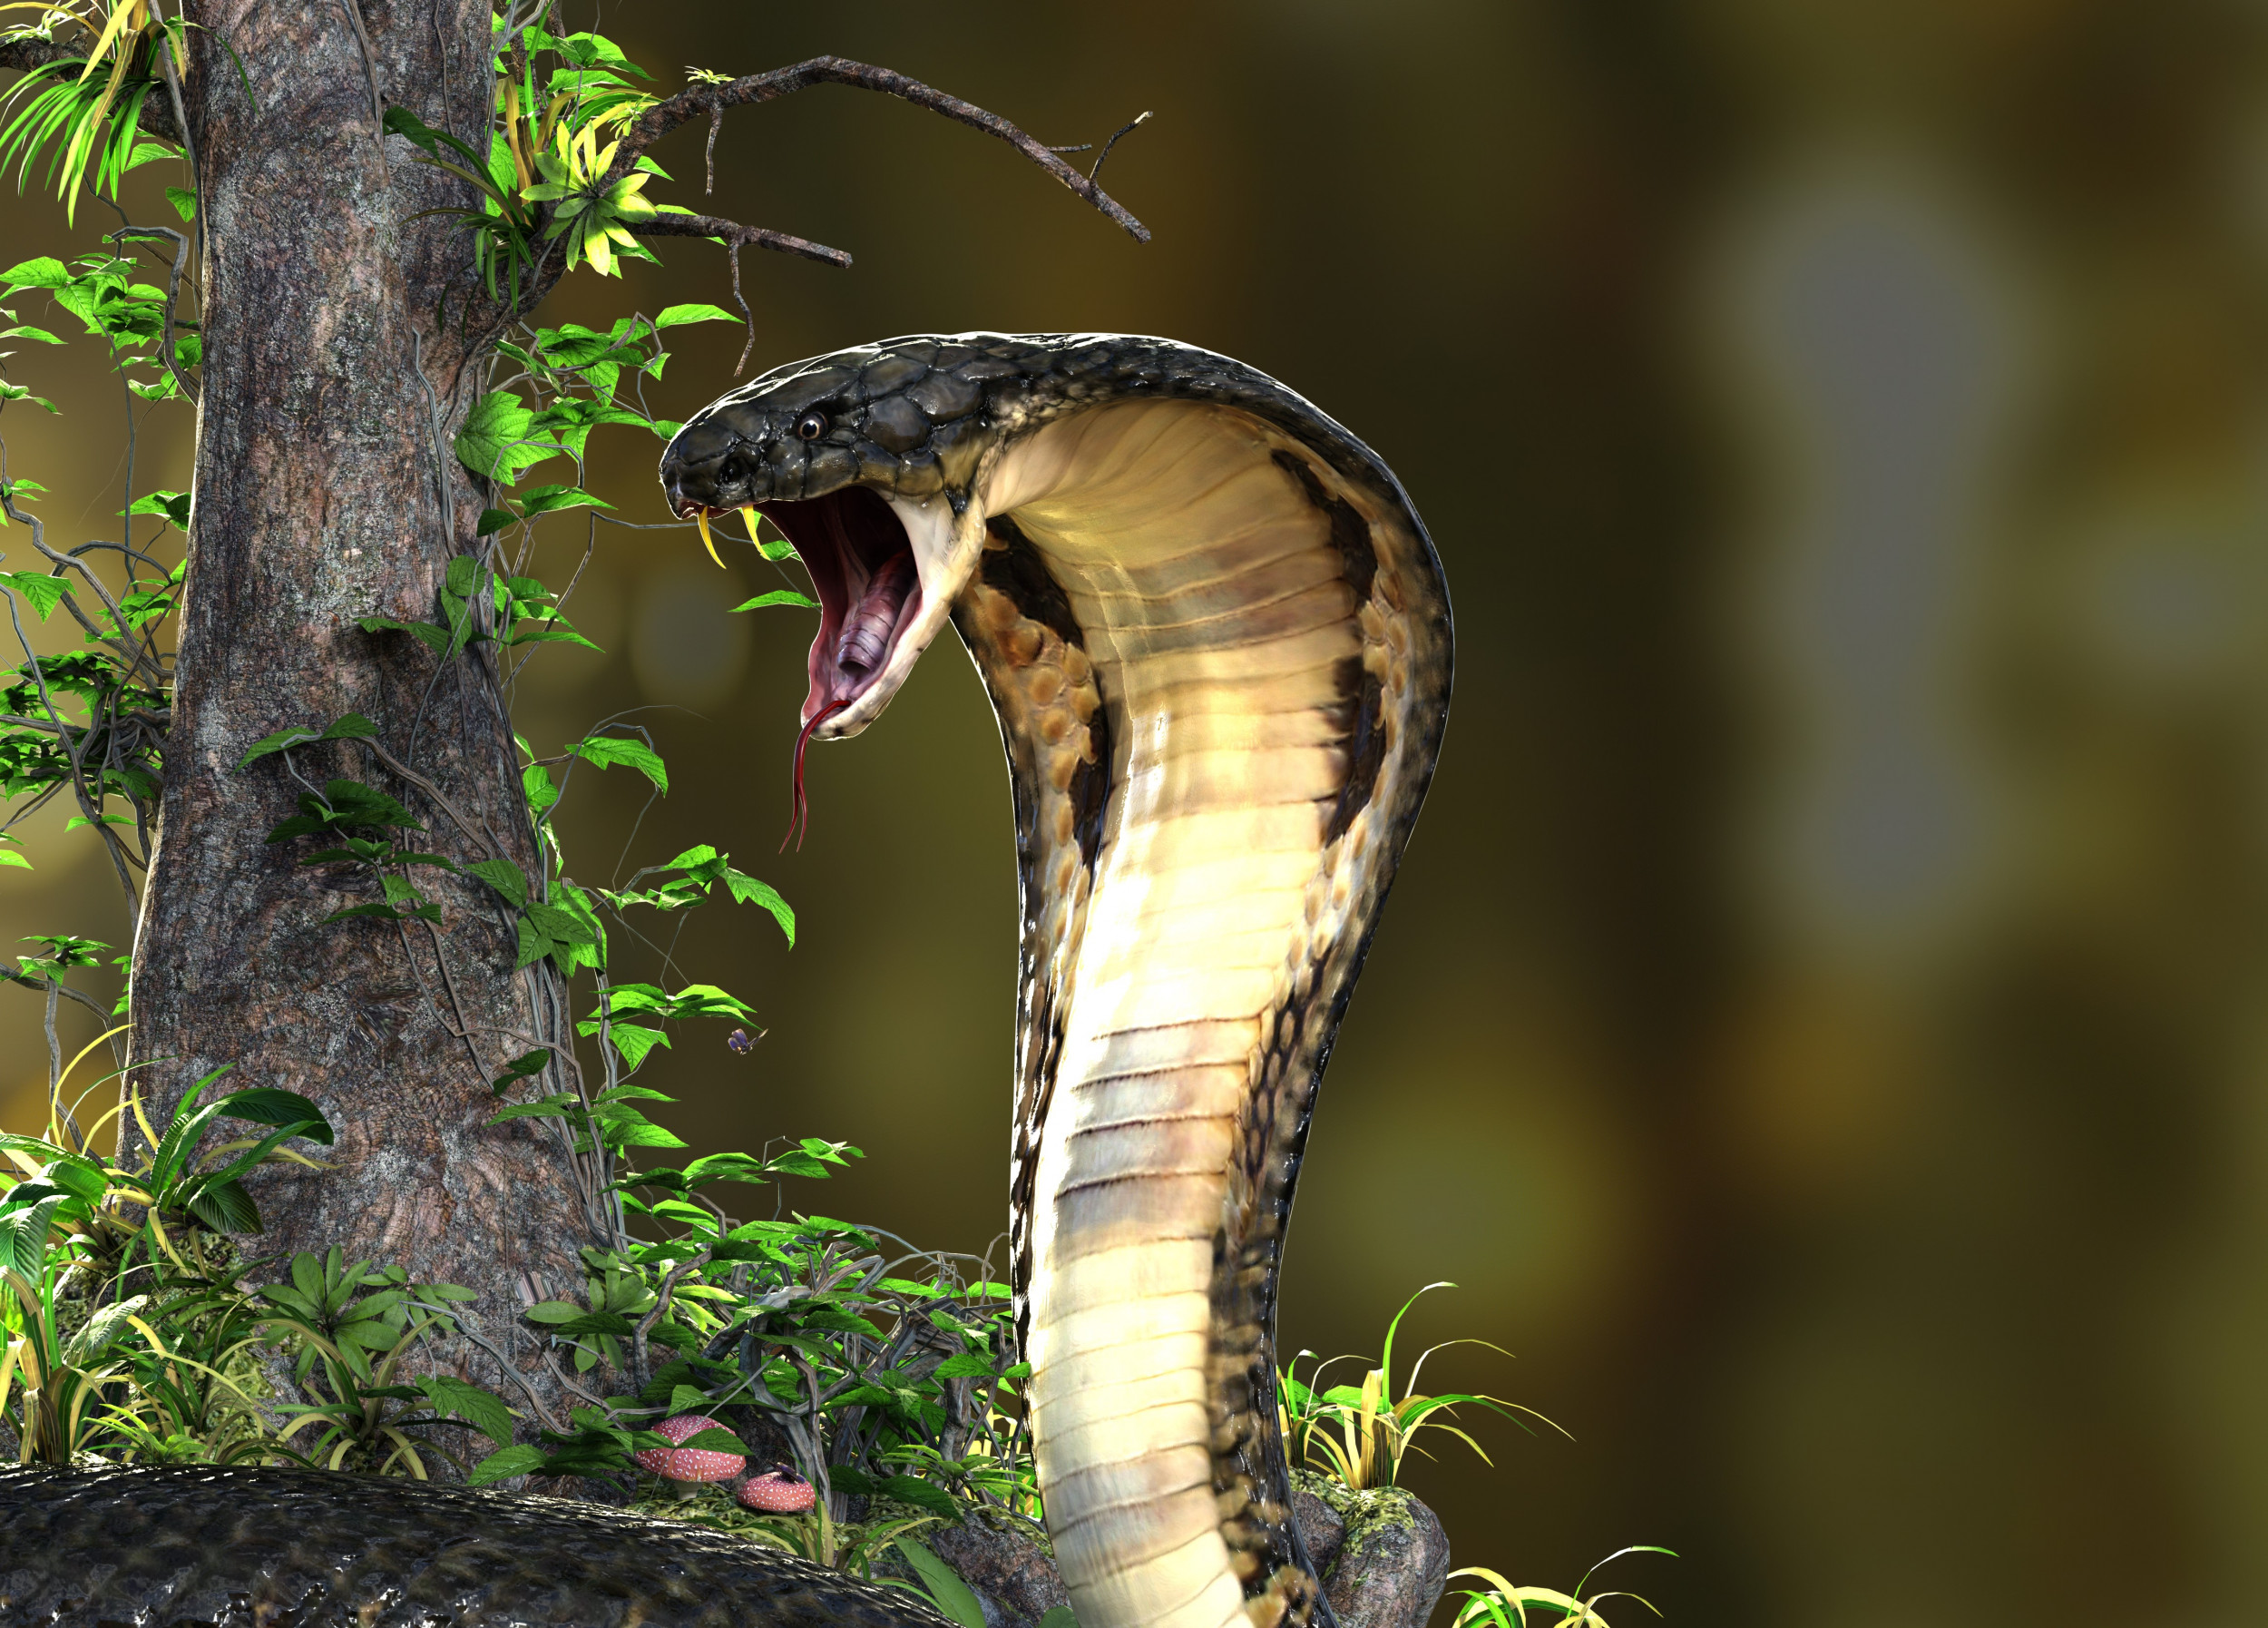 Big King Cobra Snake with Hood